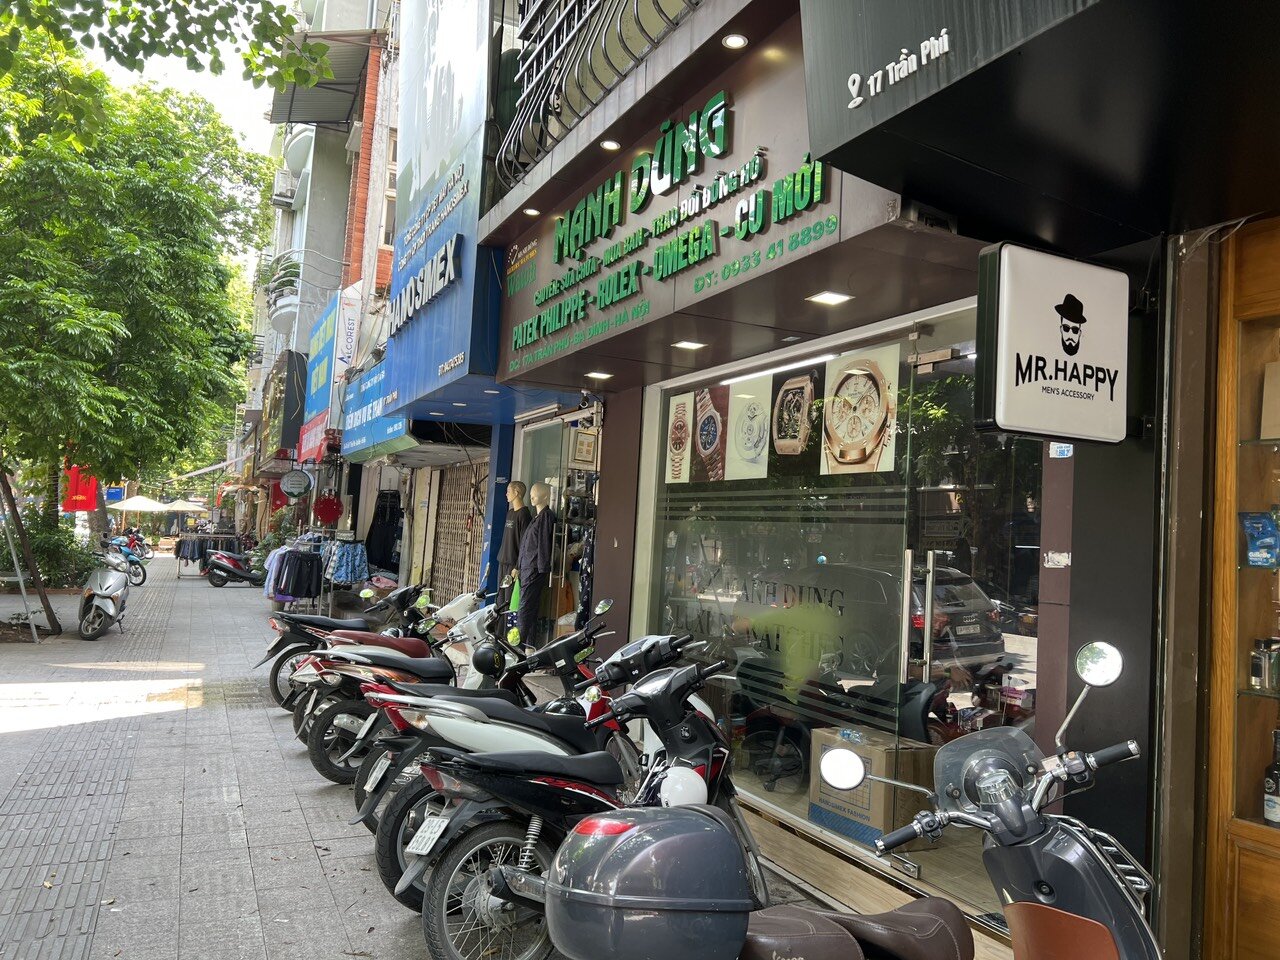 Cửa hàng đồng hồ Mạnh Dũng Luxury tại Hà Nội